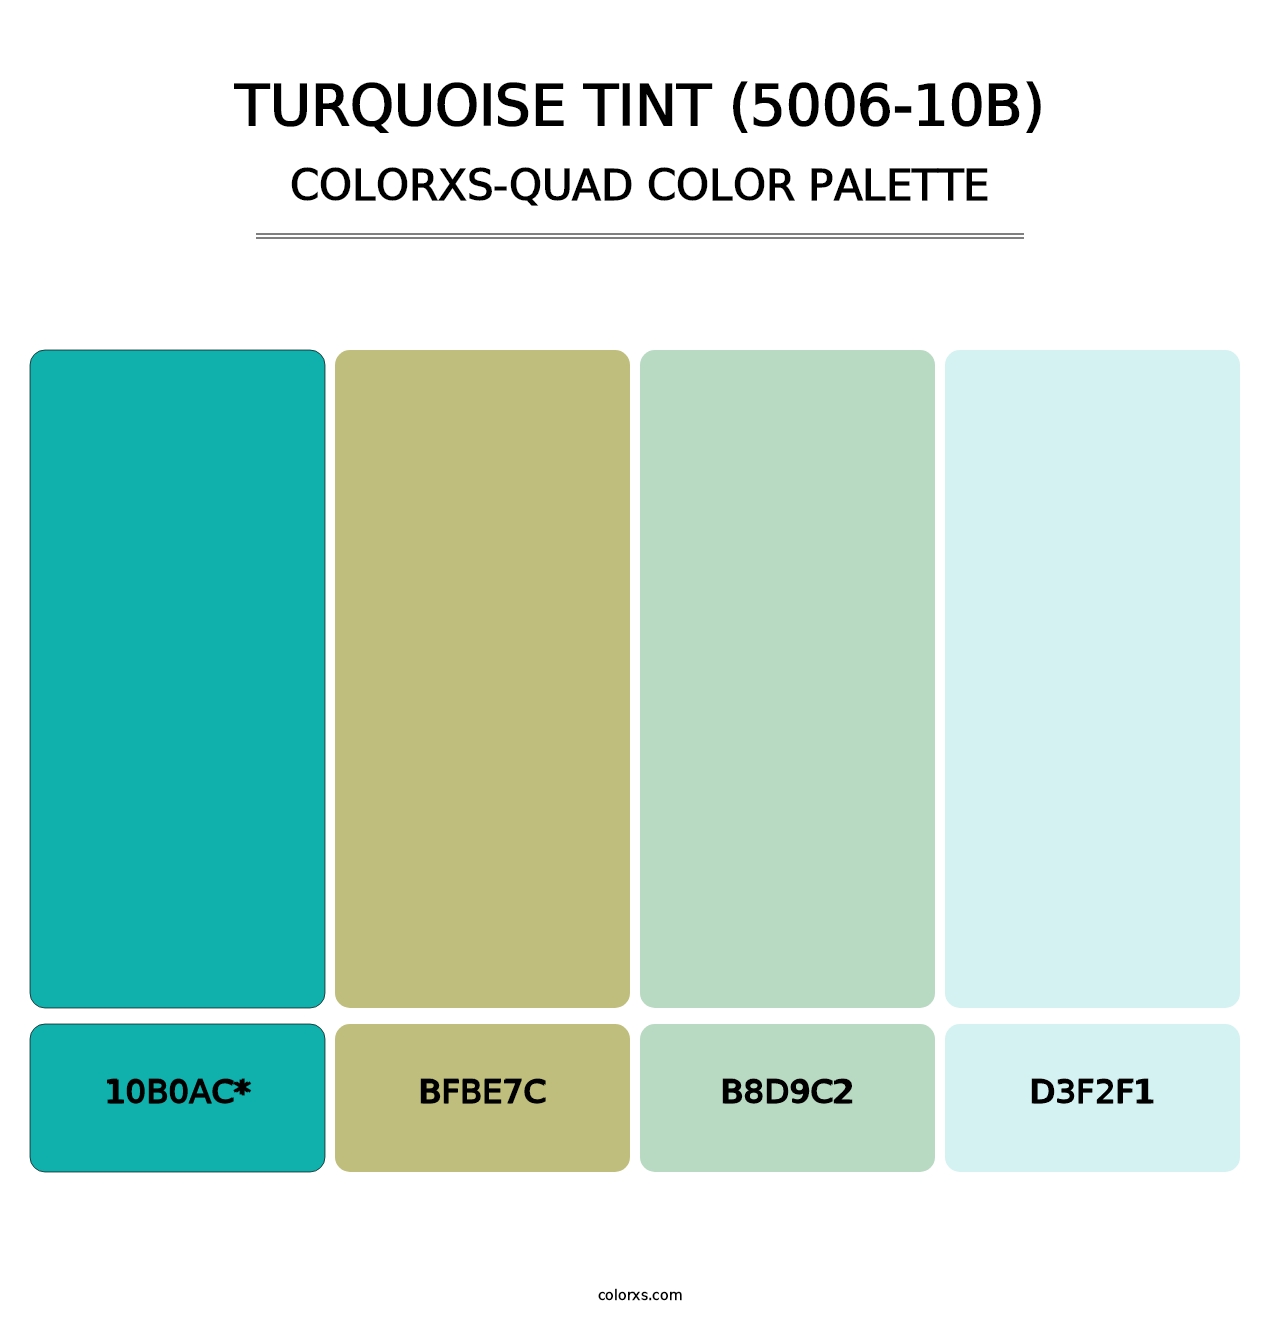 Turquoise Tint (5006-10B) - Colorxs Quad Palette